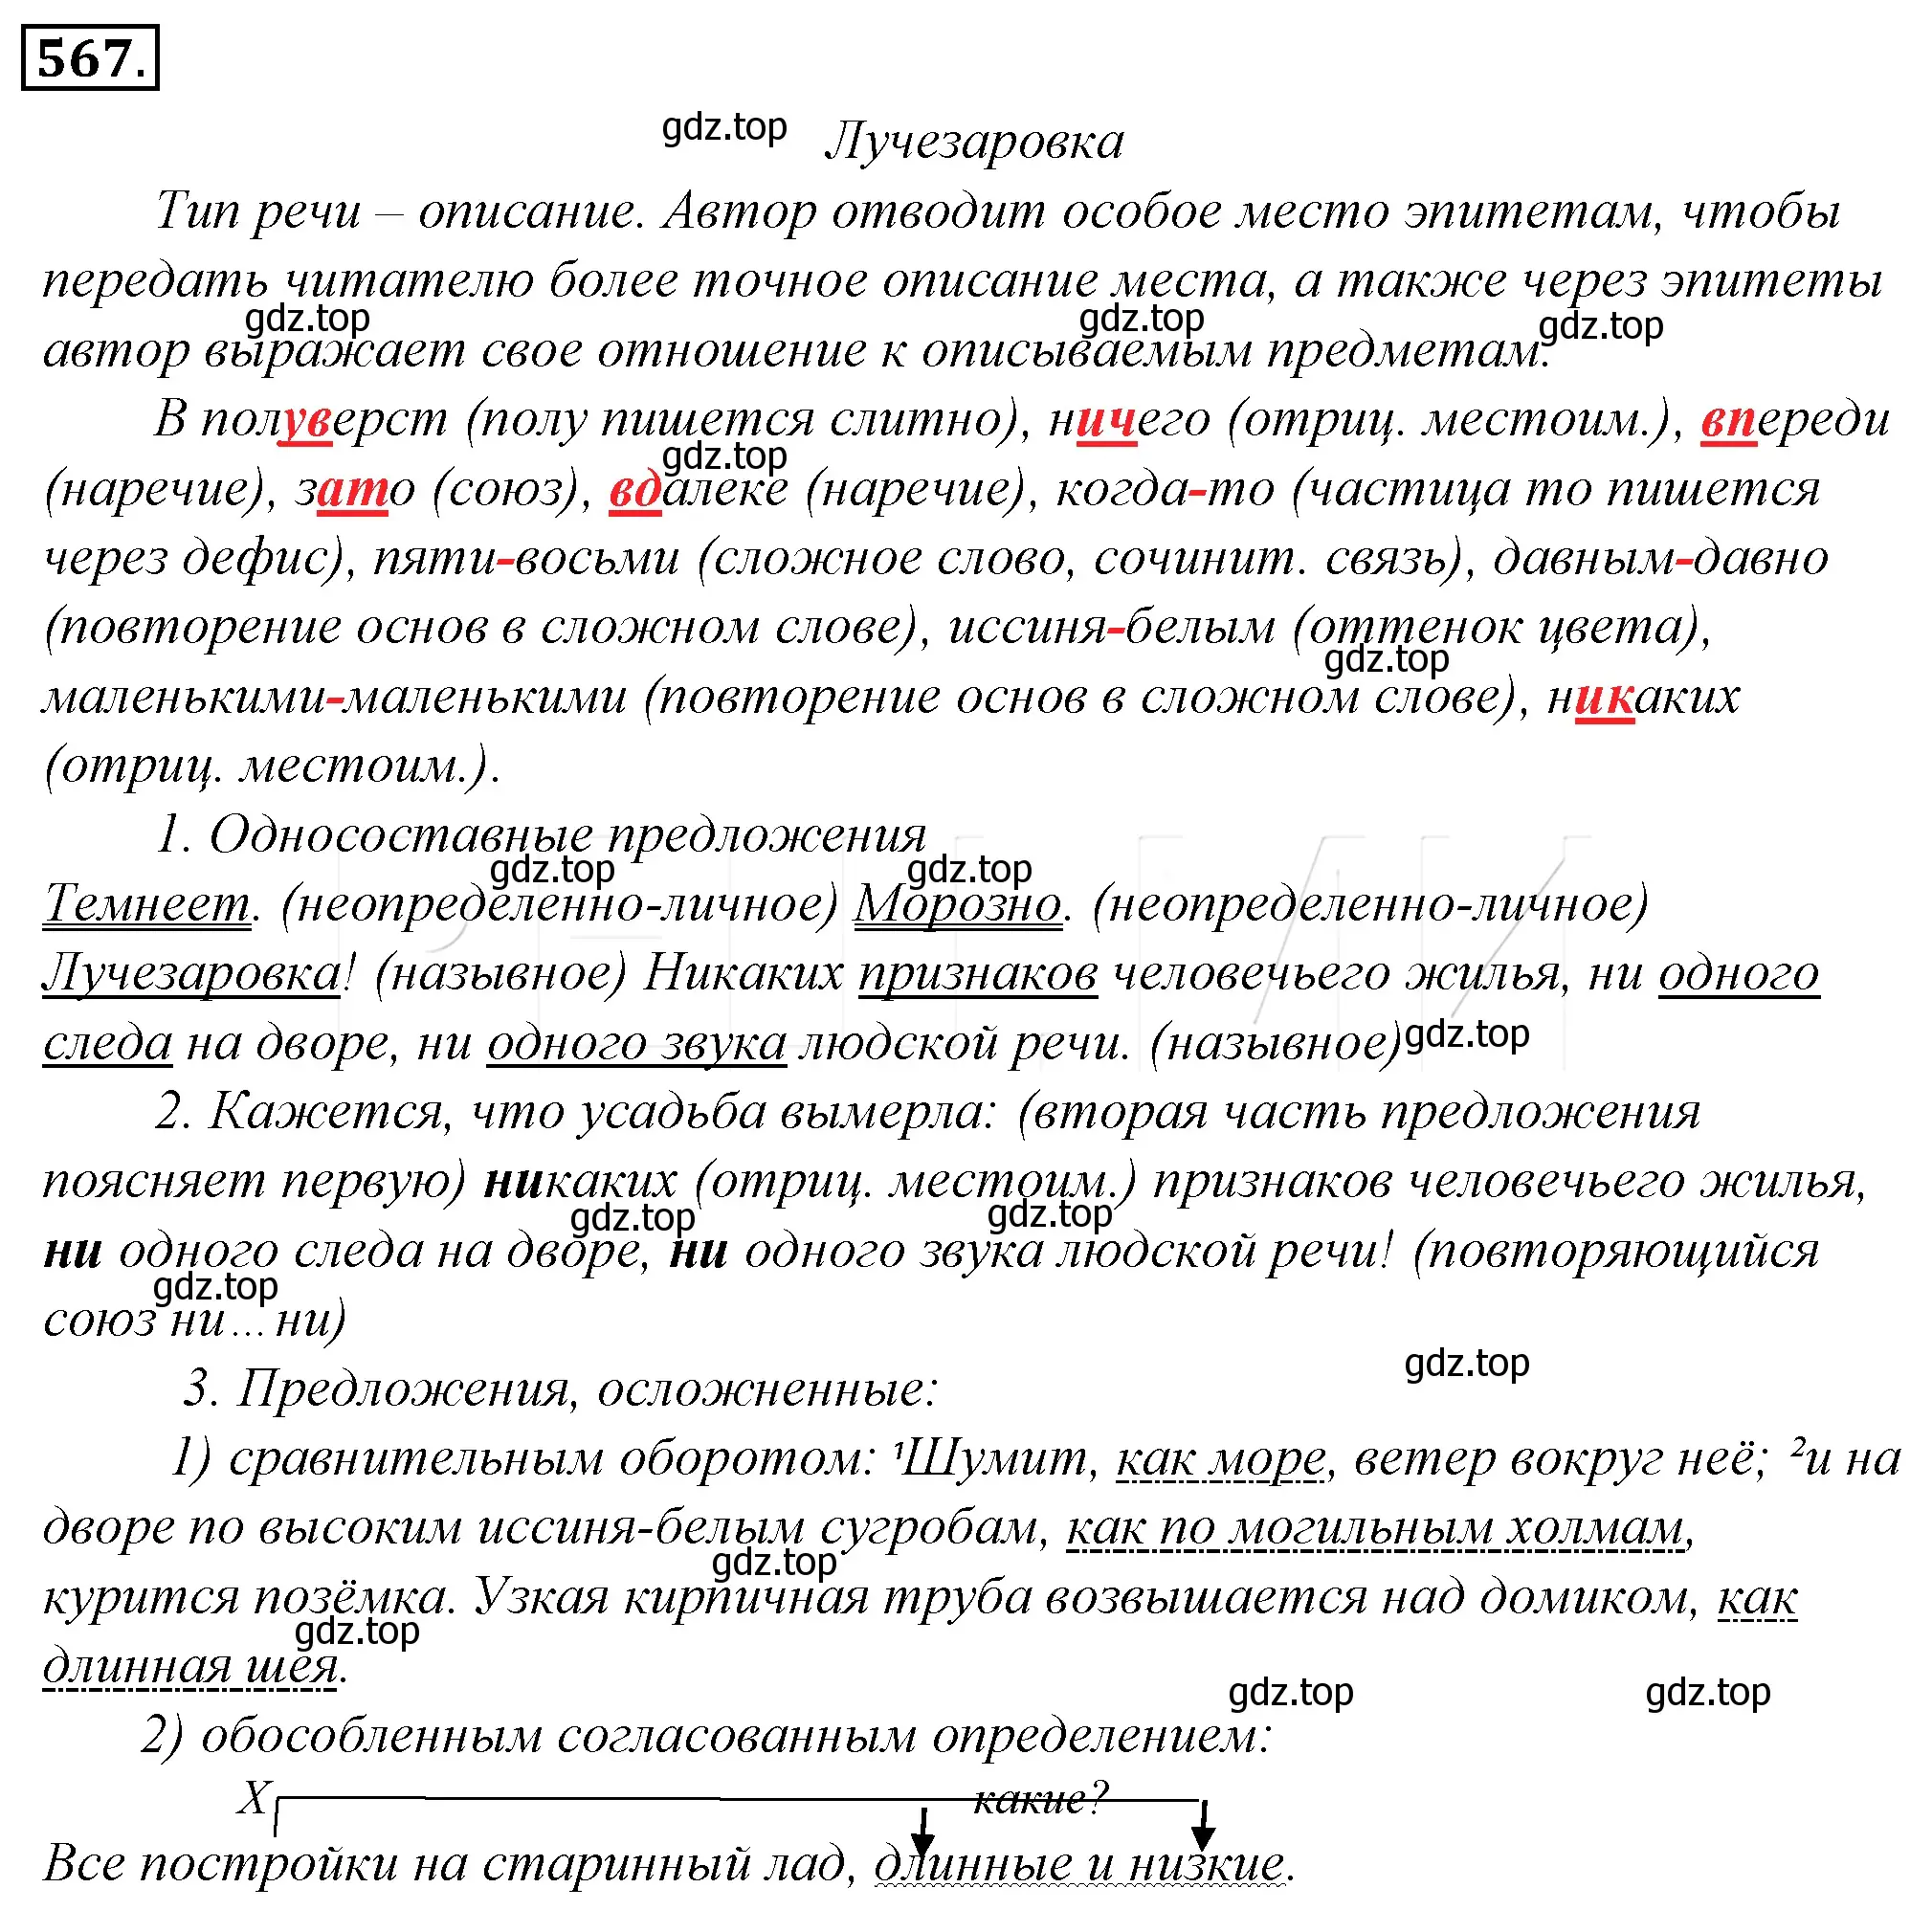 Решение 4. номер 243 (страница 331) гдз по русскому языку 10-11 класс Гольцова, Шамшин, учебник 2 часть